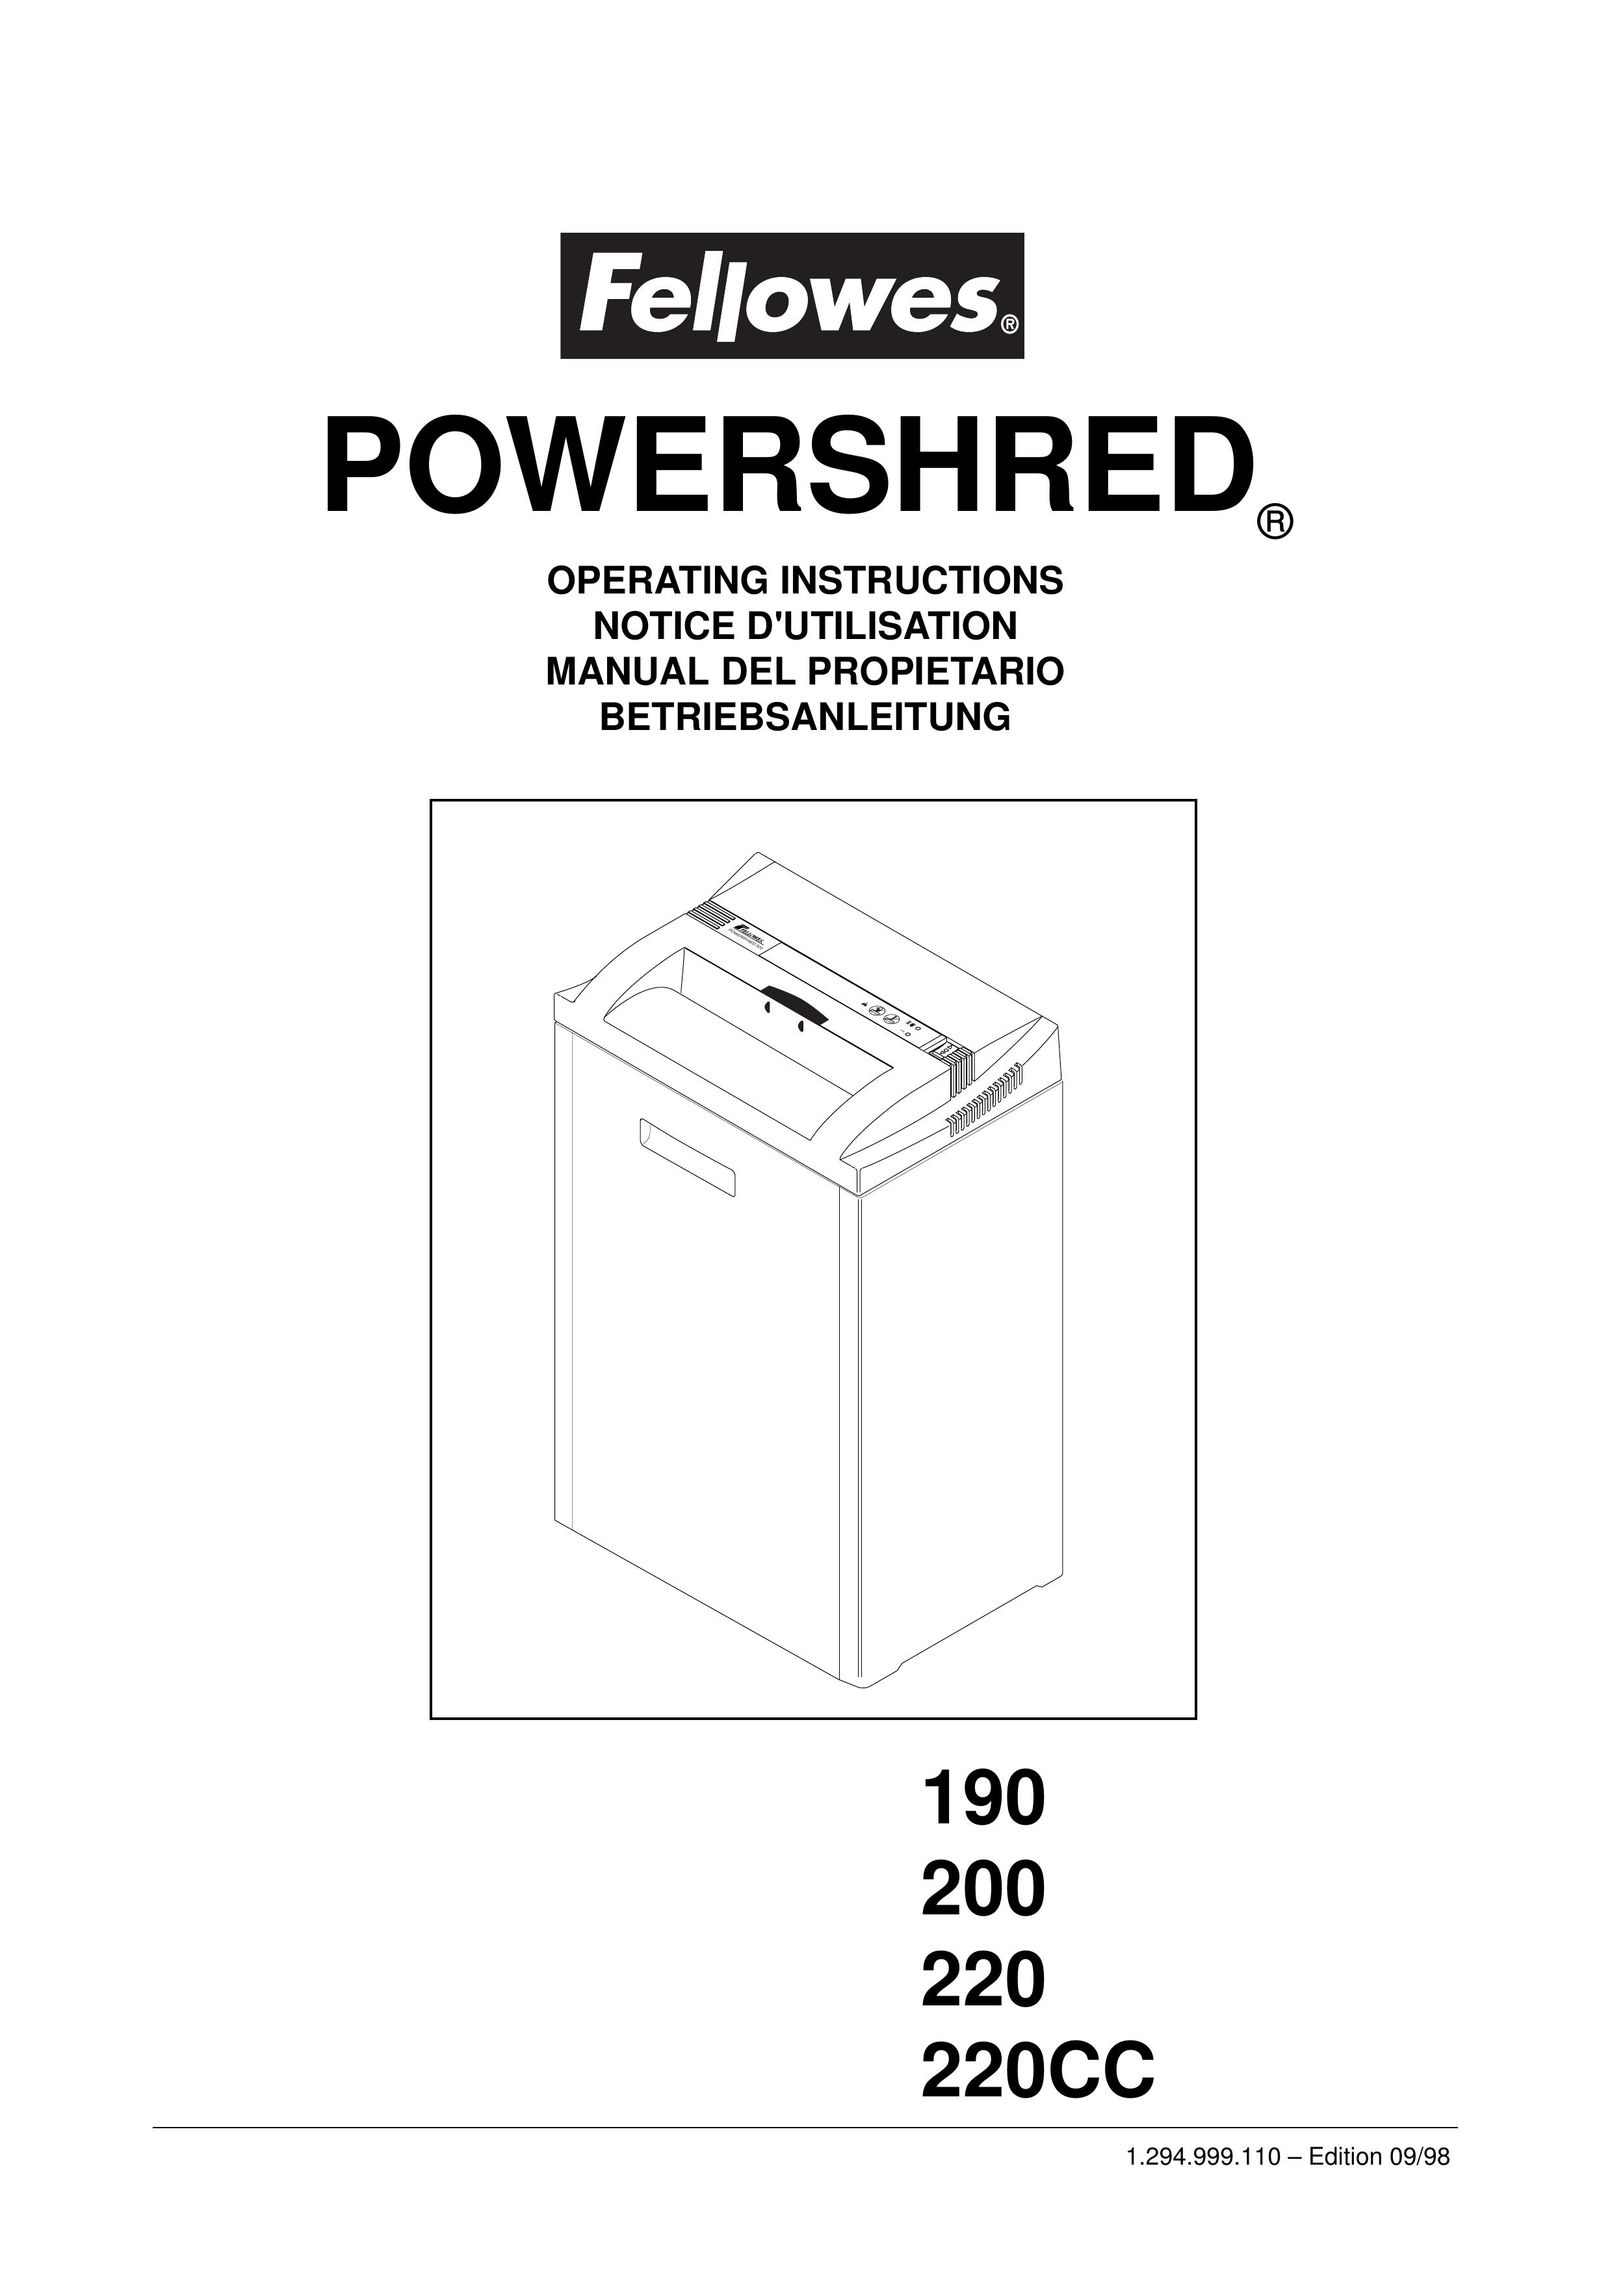 Fellowes 220CC Paper Shredder User Manual